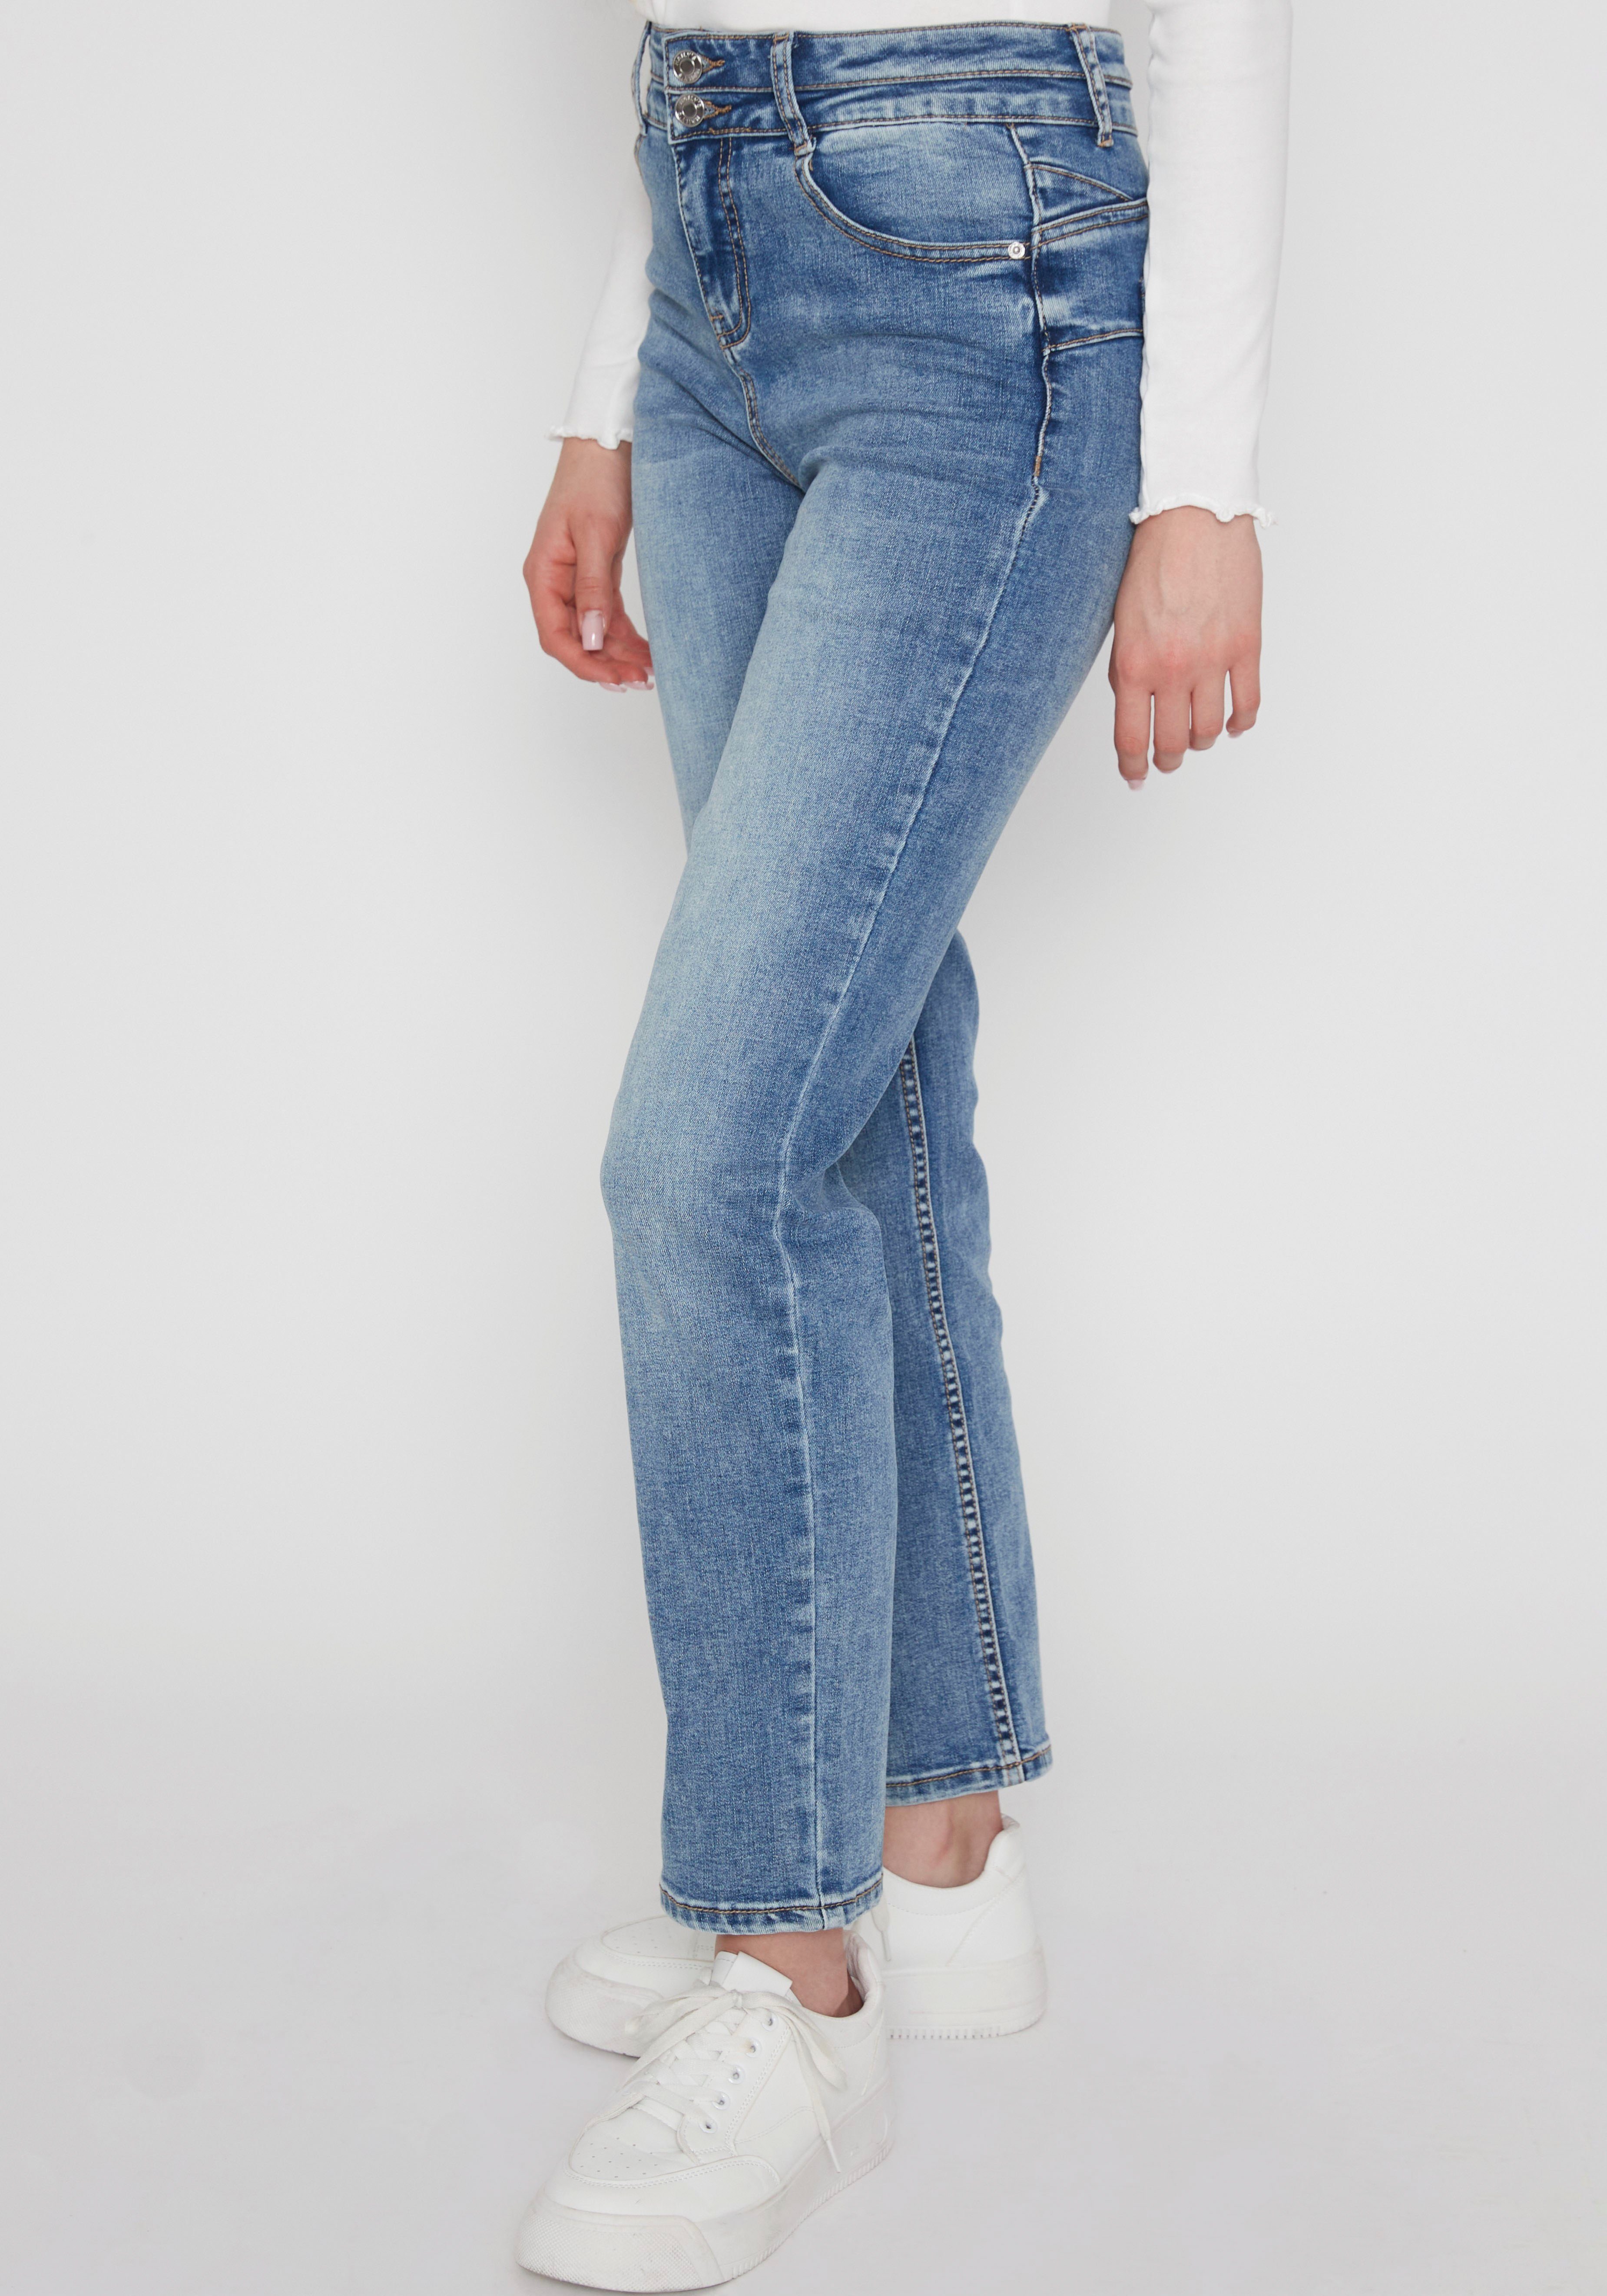 HaILYS 5-pocket jeans LG HW C JN St44rady